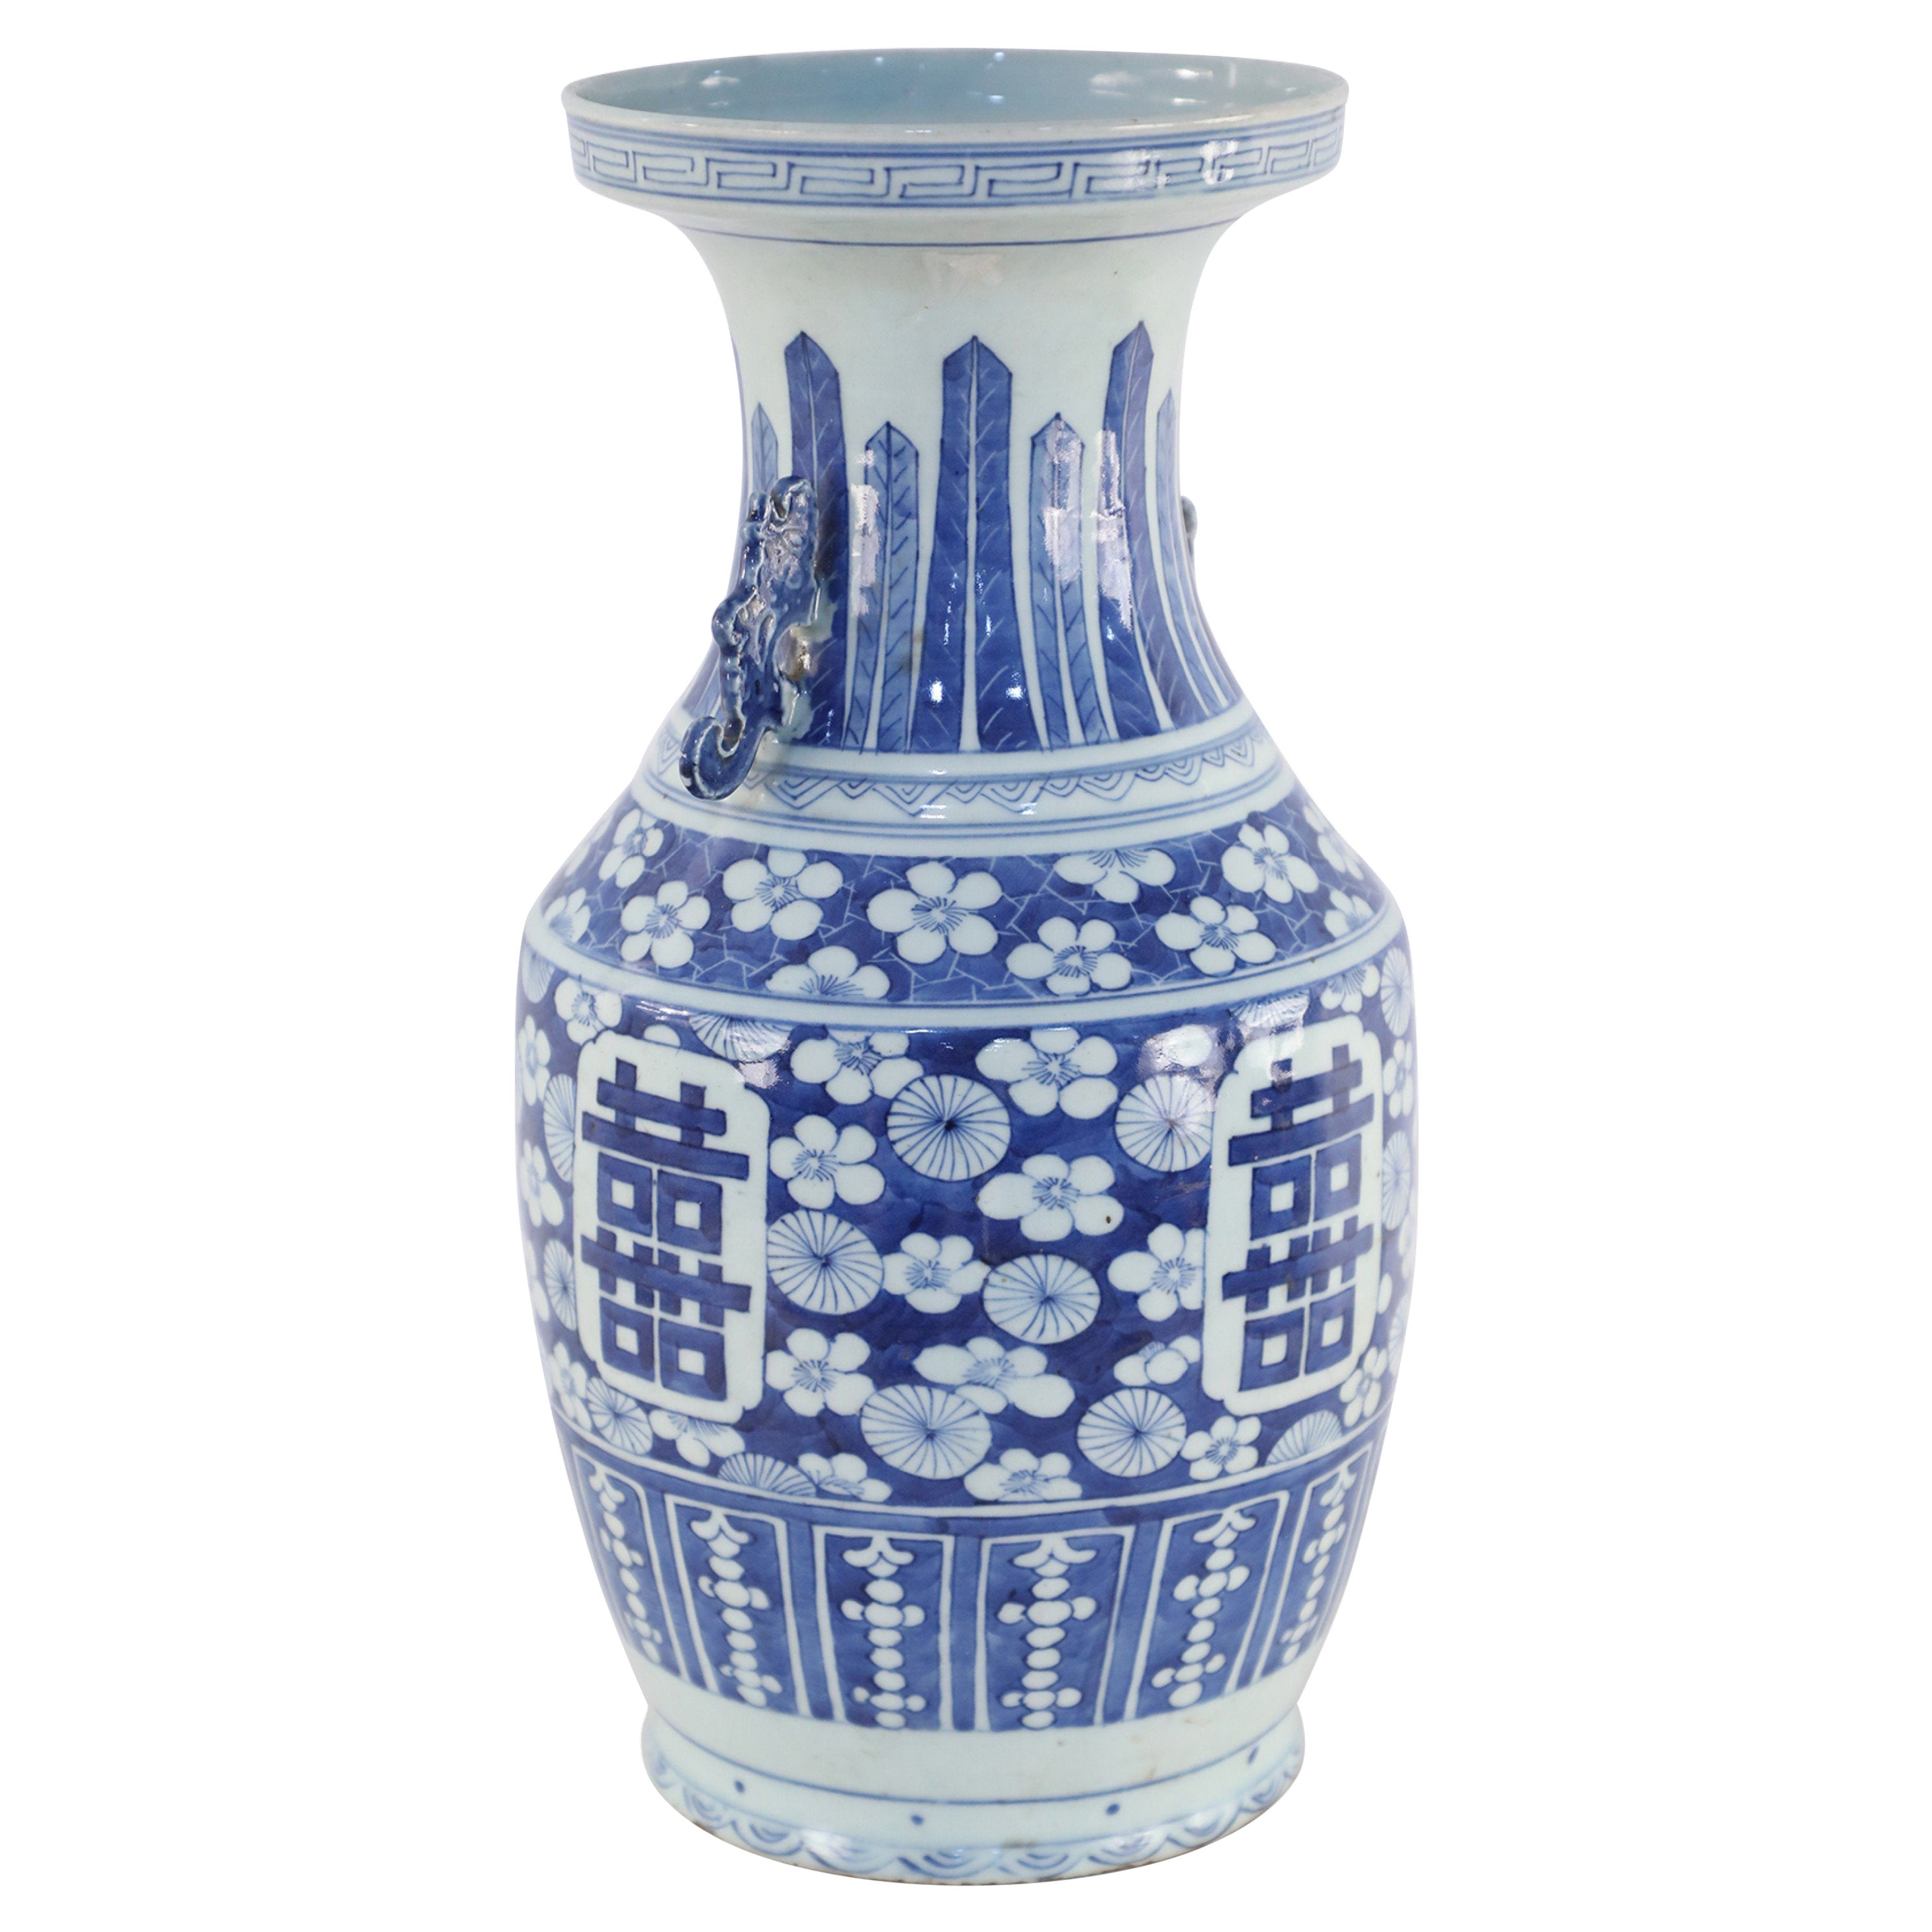 Urne chinoise en porcelaine à motifs floraux et figuratifs blancs et bleus